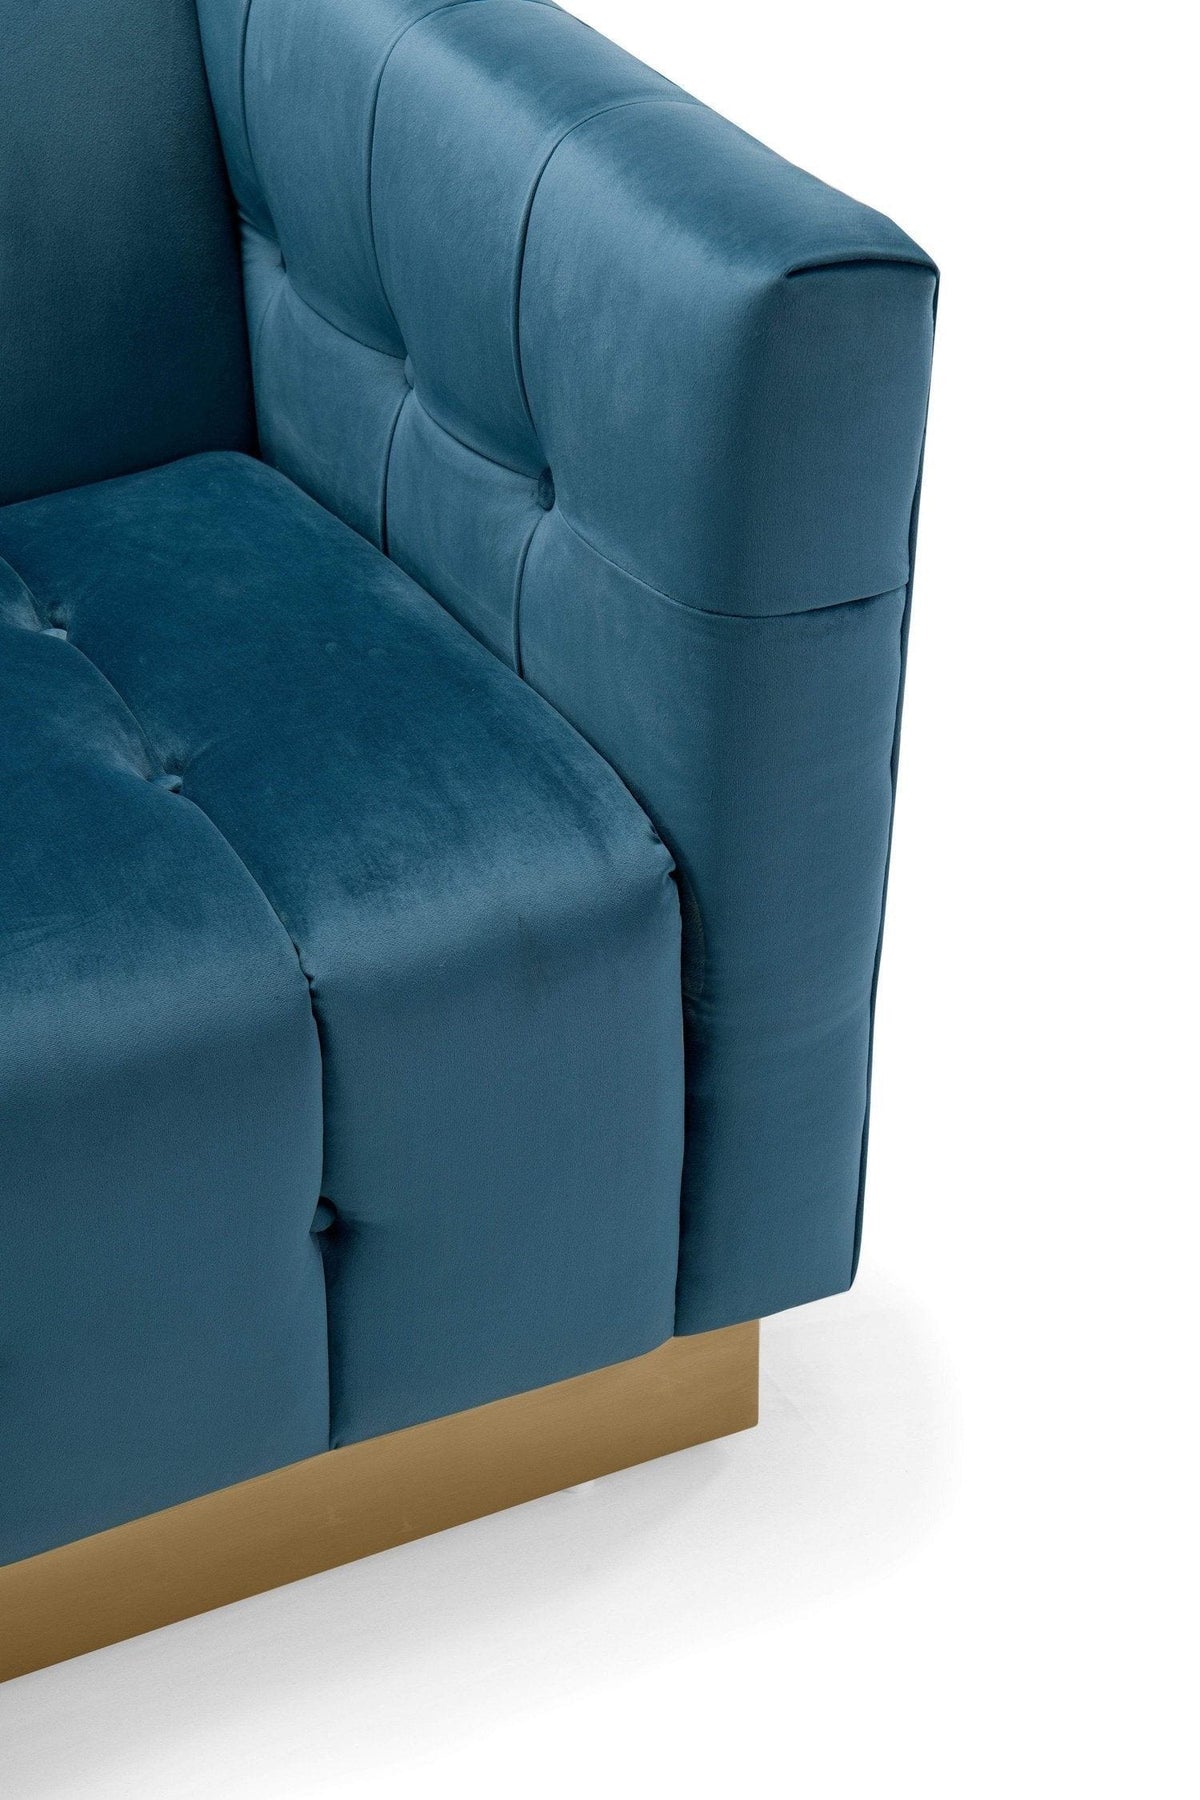 Iconic Home Primavera Velvet Sofa Button Tufted Upholstered Design 